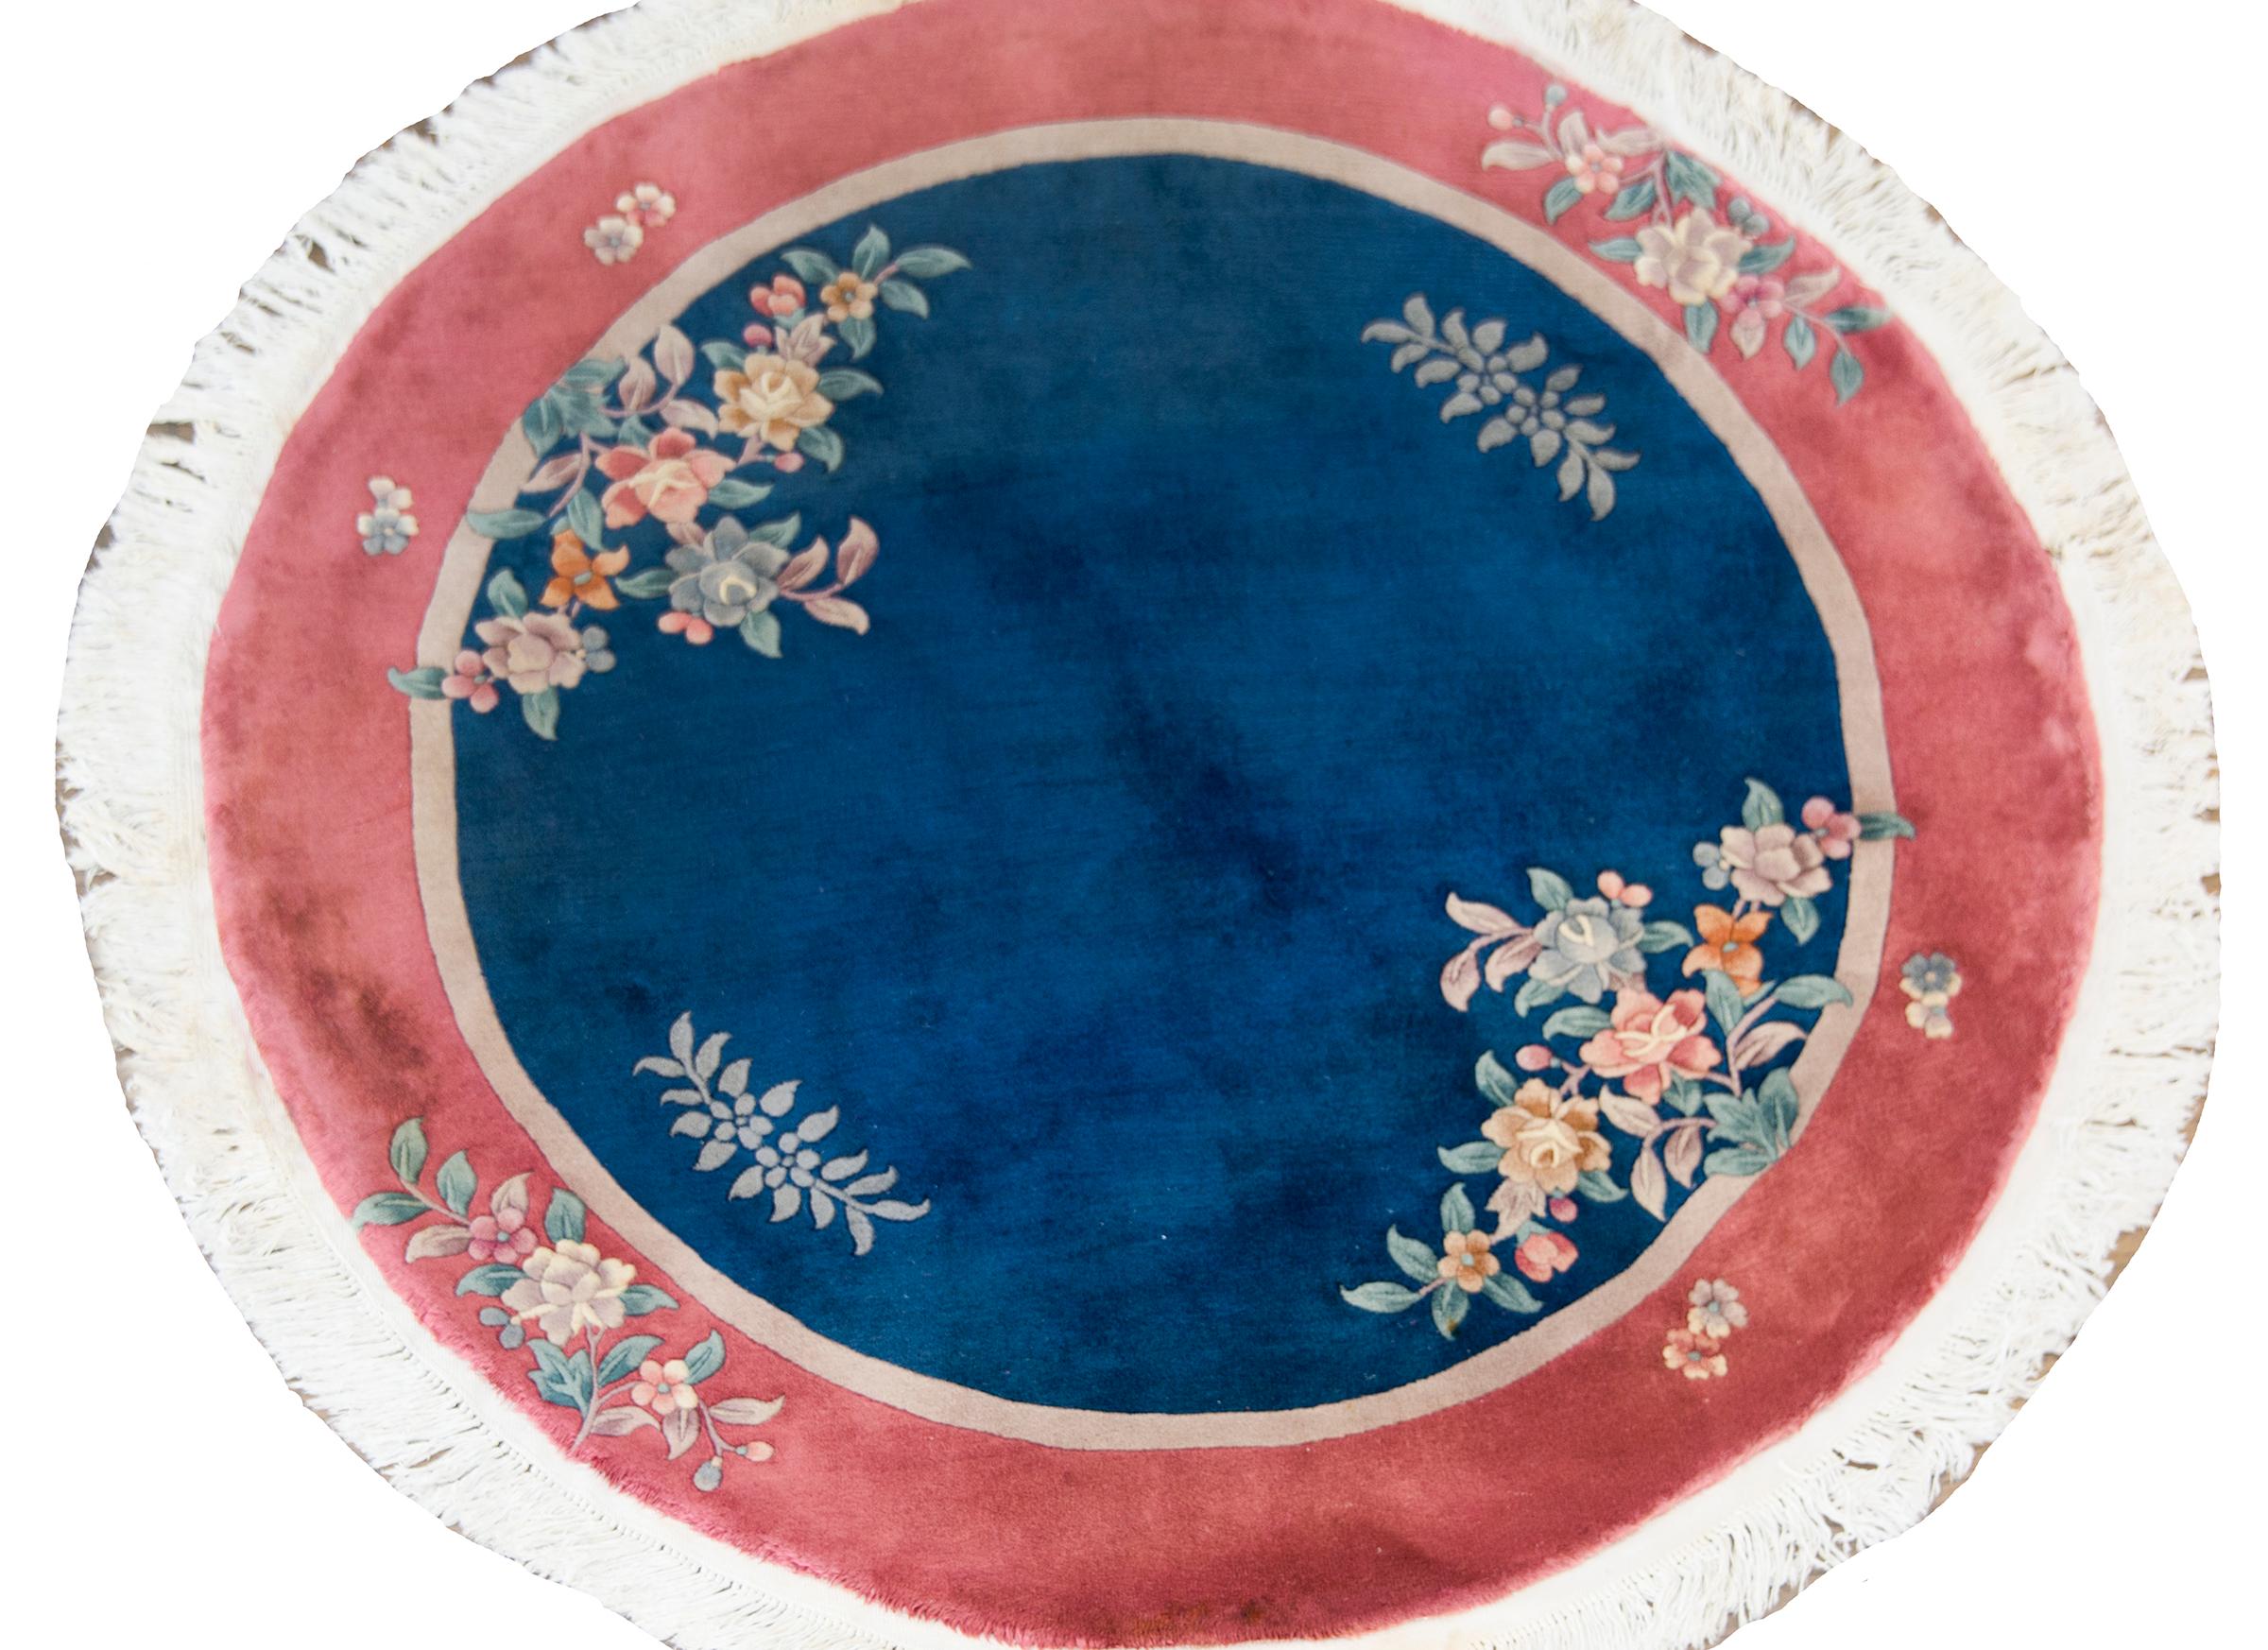 Ein schöner runder chinesischer Art-Déco-Teppich aus dem frühen 20. Jahrhundert mit einem dunklen indigoblauen Feld, das von einem dünnen taupefarbenen Streifen und einer breiten bordeauxfarbenen Streifenbordüre umgeben ist, überlagert von